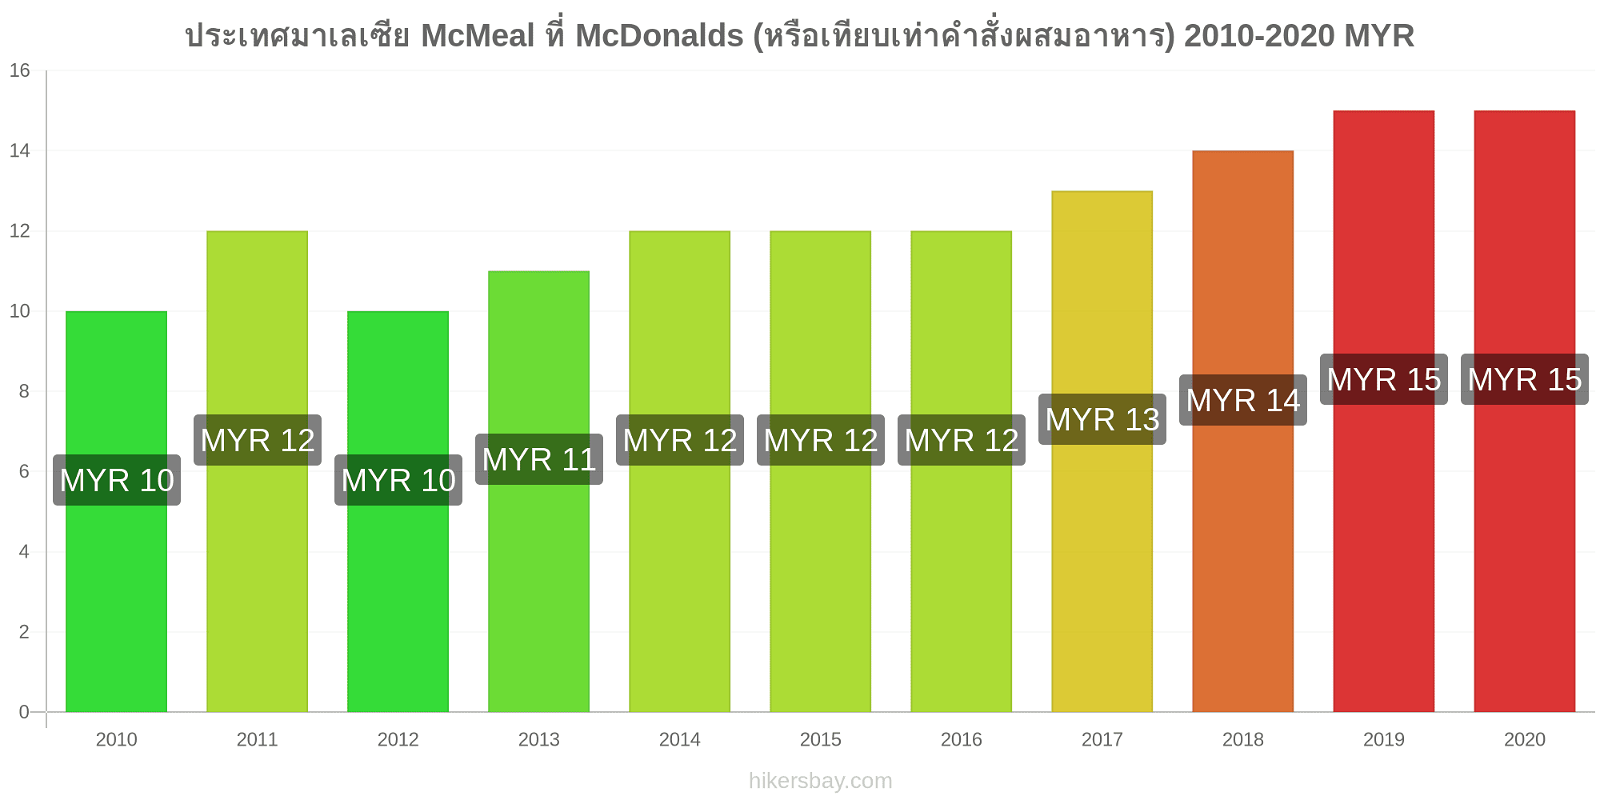 ประเทศมาเลเซีย การเปลี่ยนแปลงราคา McMeal ที่ McDonalds (หรือเทียบเท่าคำสั่งผสมอาหาร) hikersbay.com